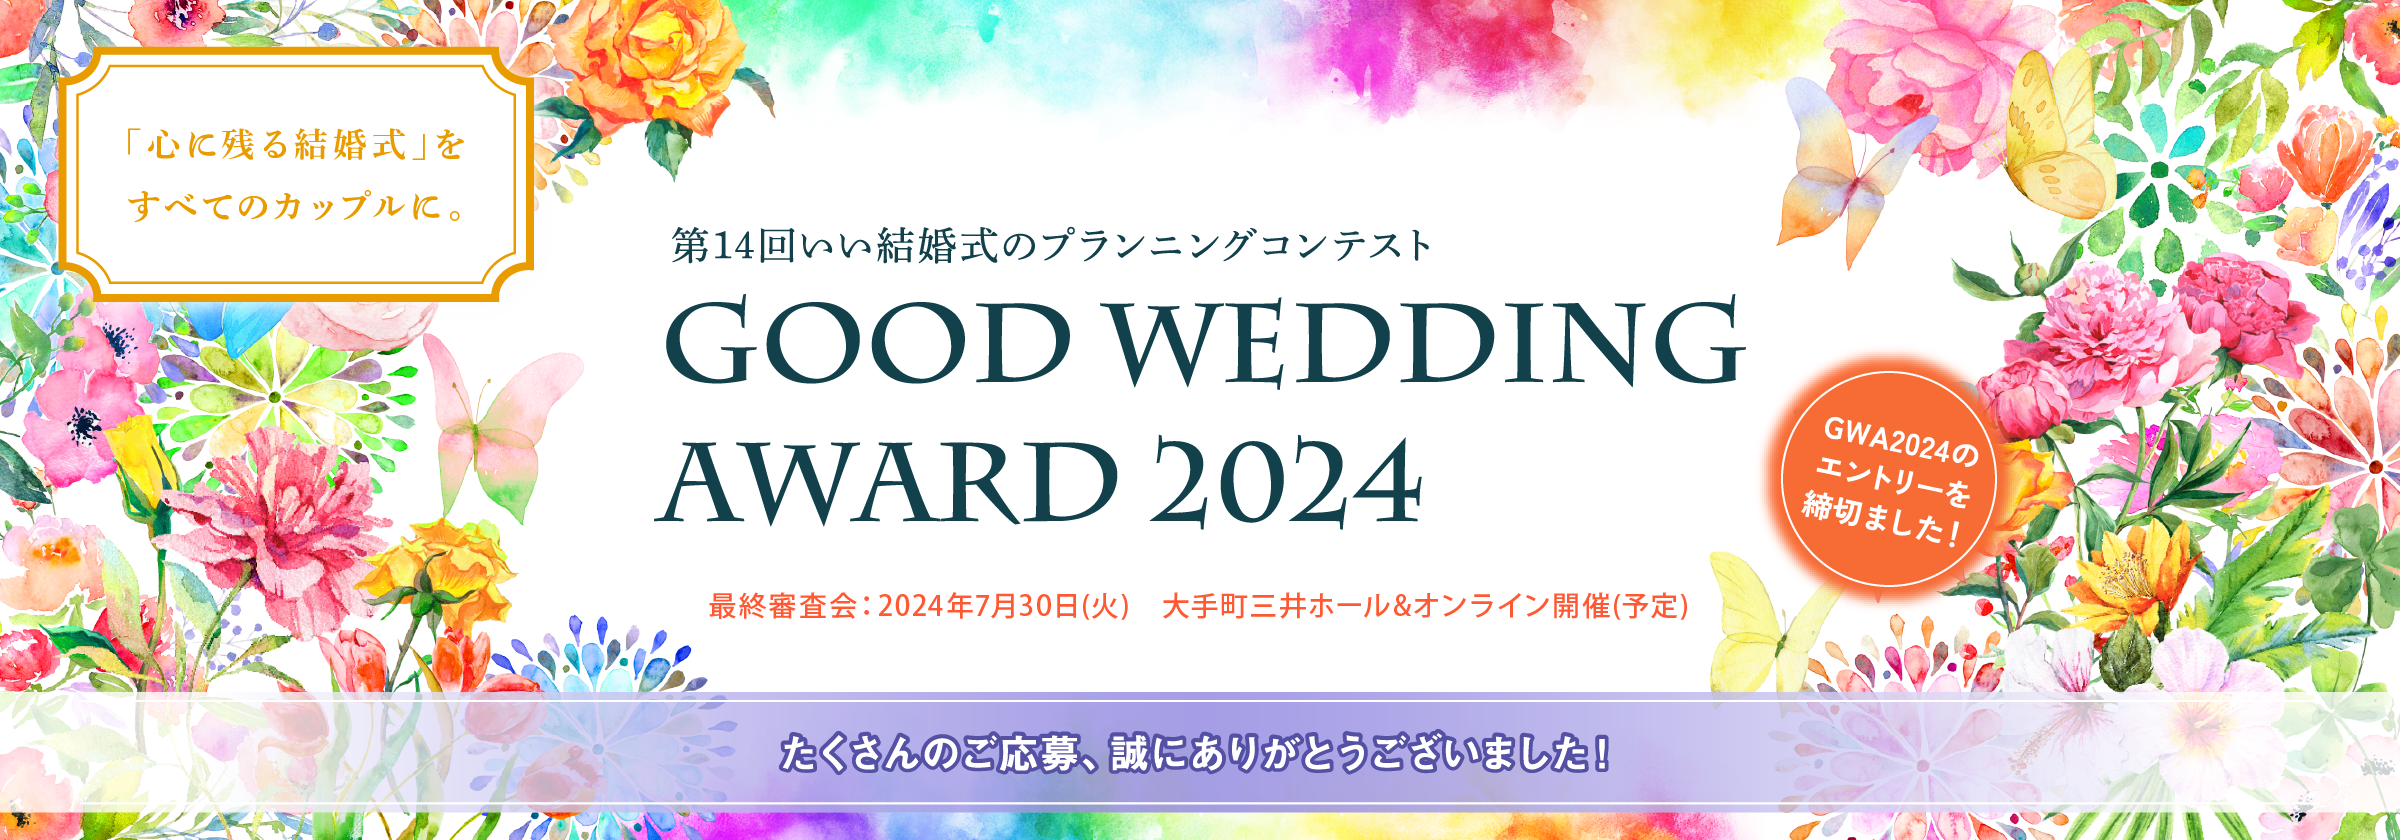 第14回 いい結婚式のプランニングコンテスト GOOD WEDDING AWARD 2024